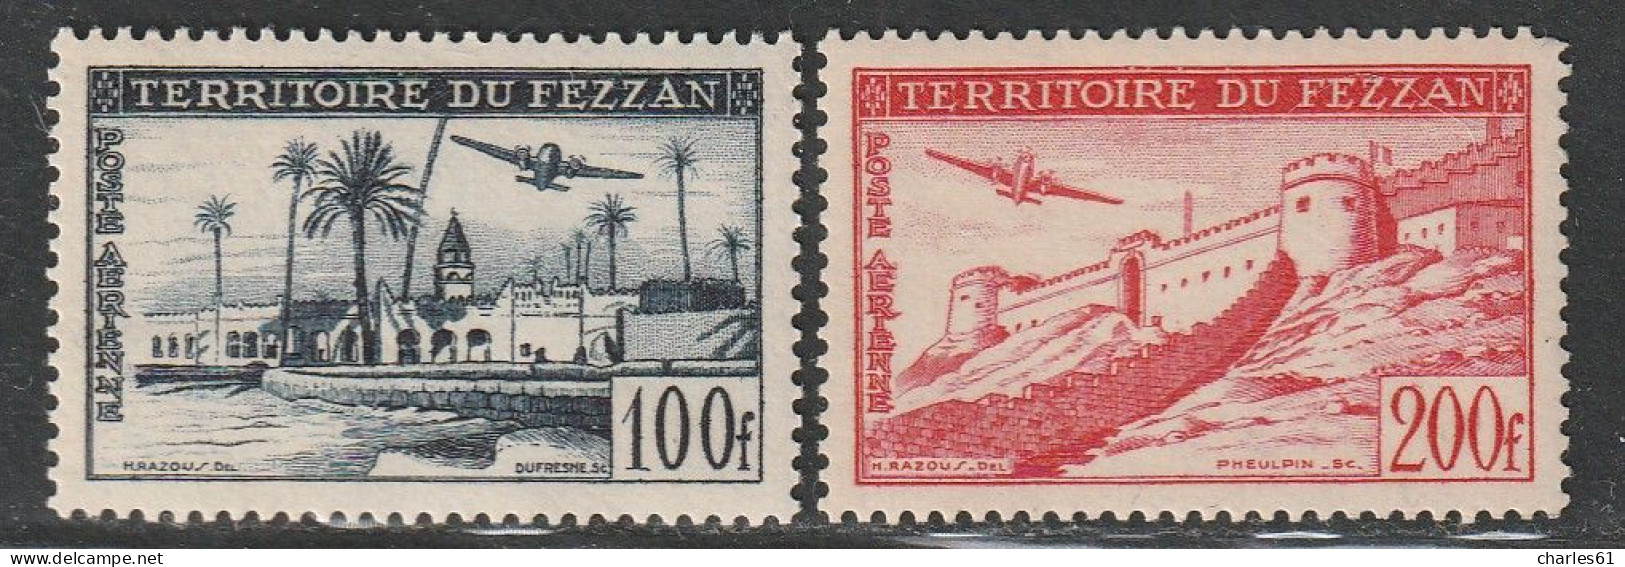 FEZZAN - Poste Aérienne N°6/7 ** (1951) - Neufs